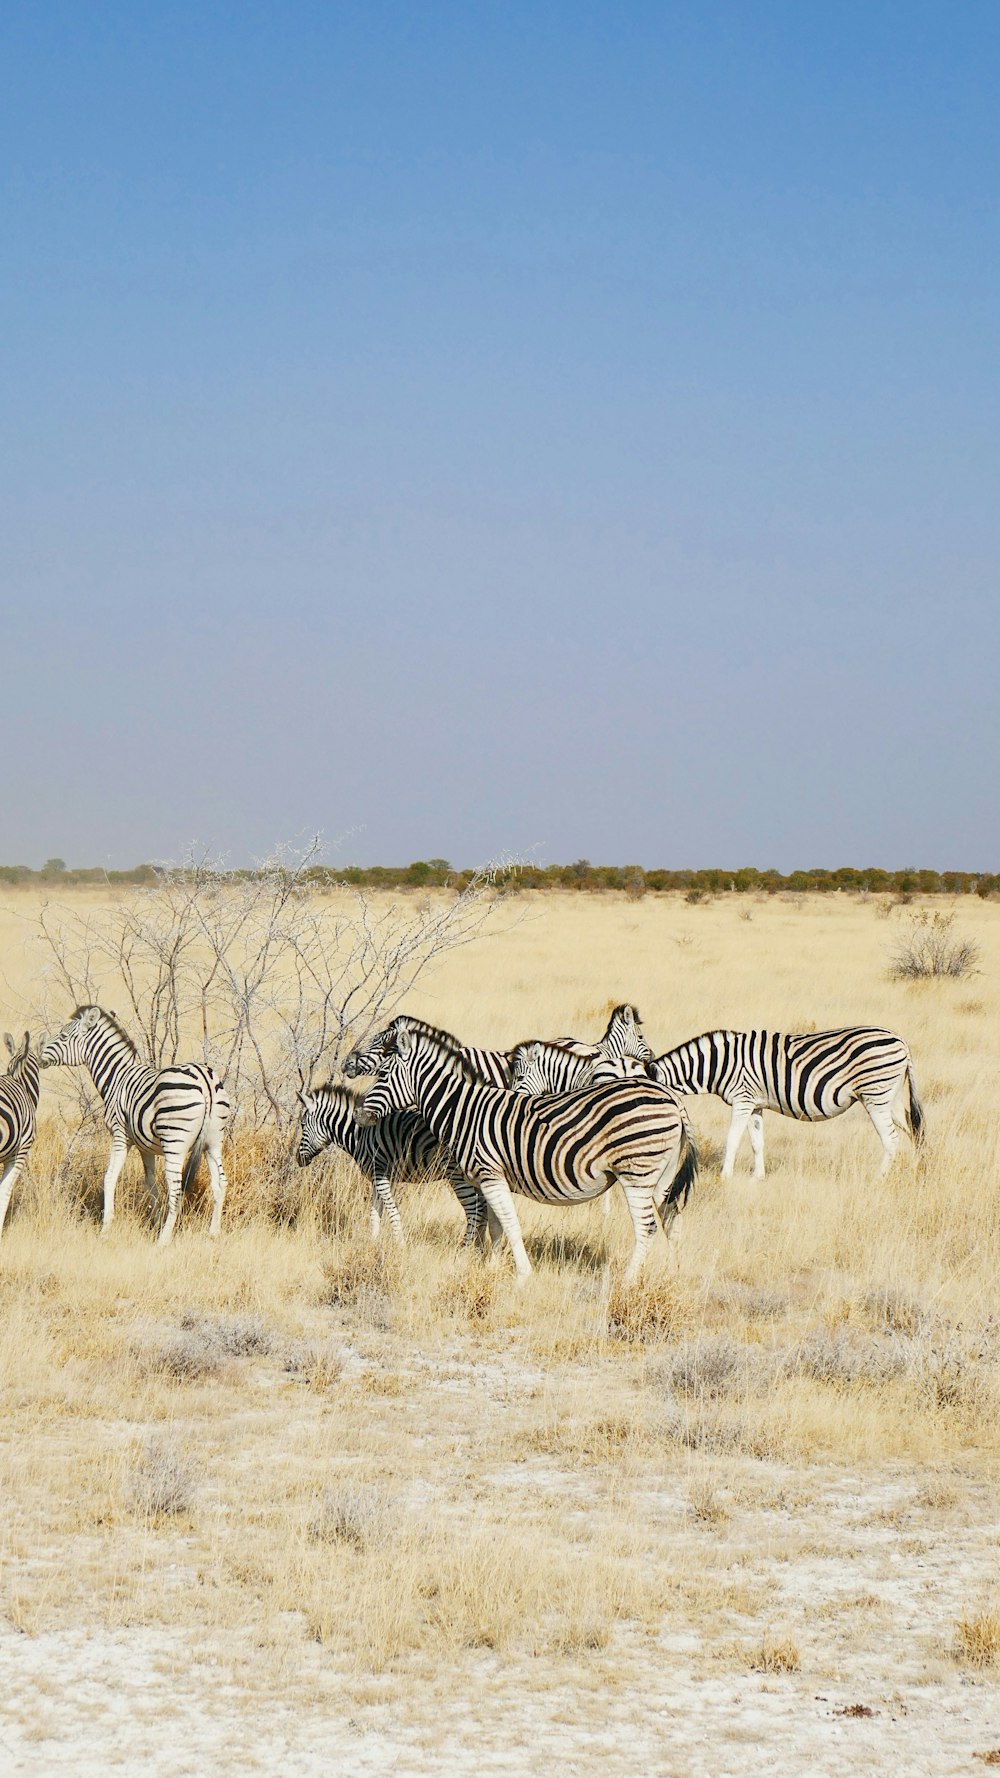 Una manada de cebras caminando por un campo de hierba seca